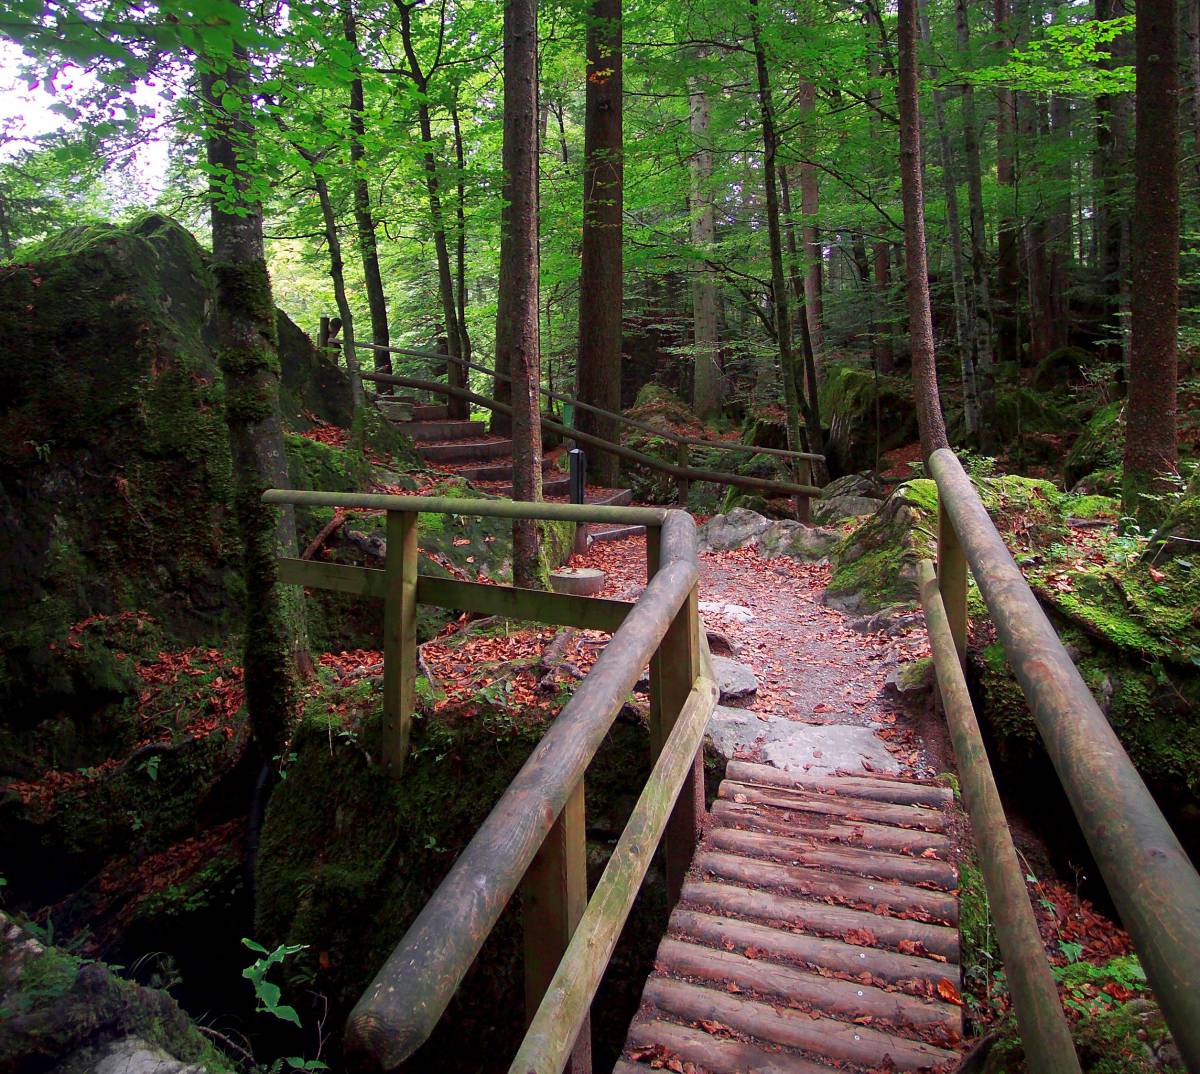  Blausee woodland path in Switzerland